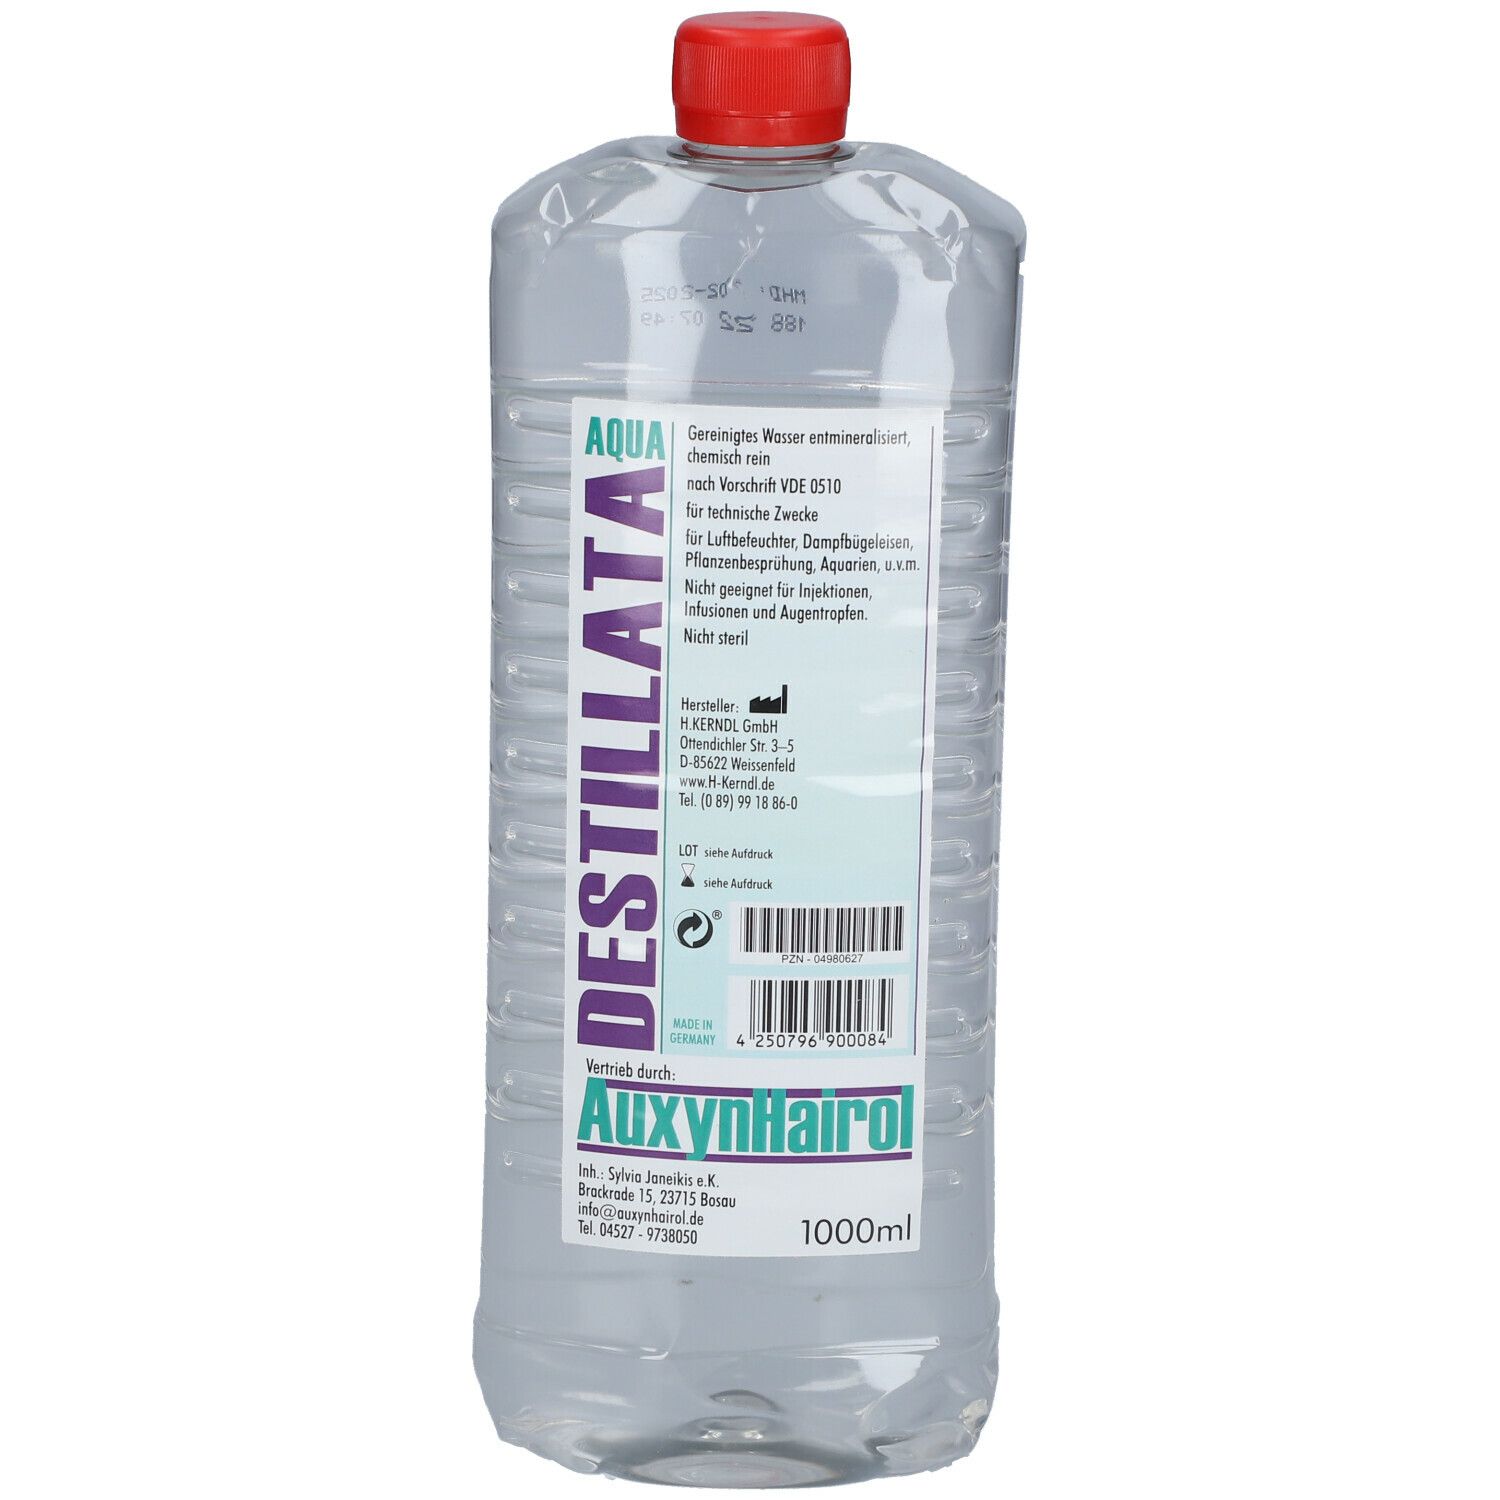 AuxynHairol destilliertes Wasser